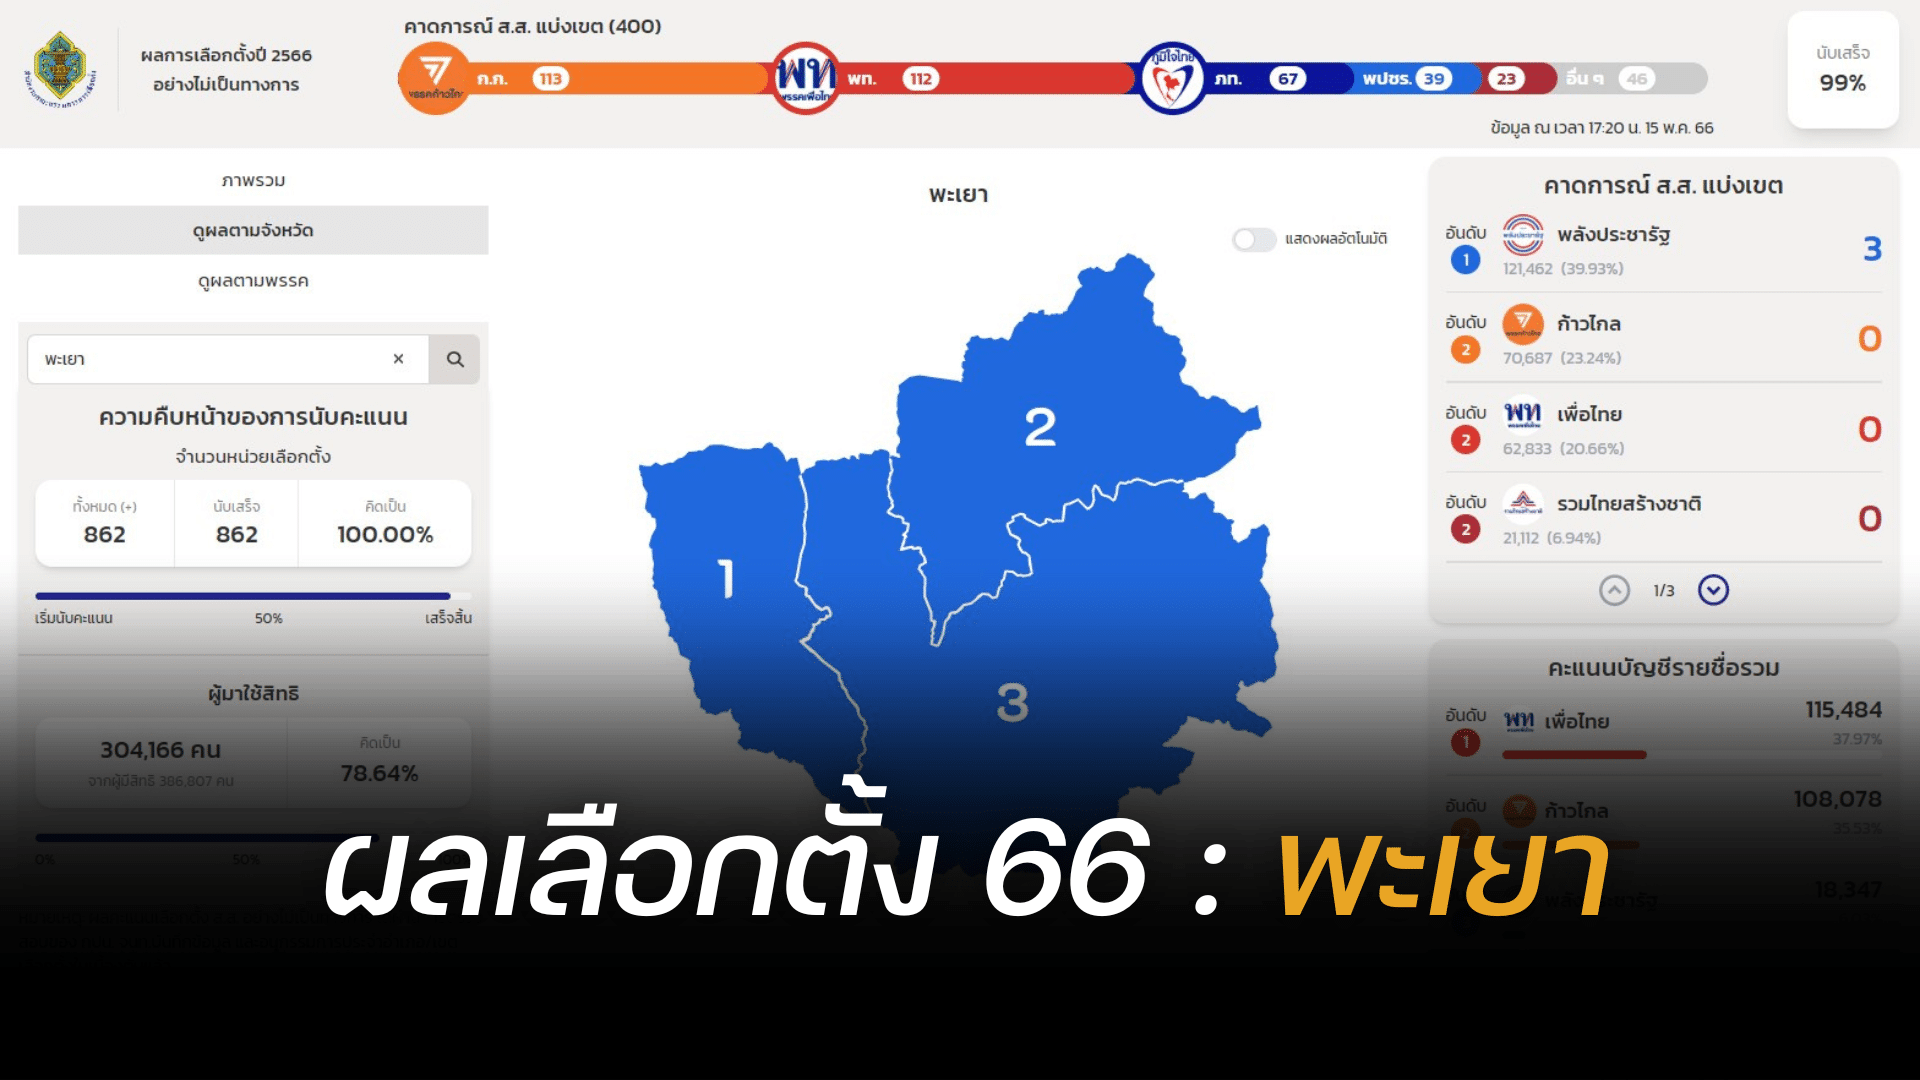 Thailand election 2566 Payao